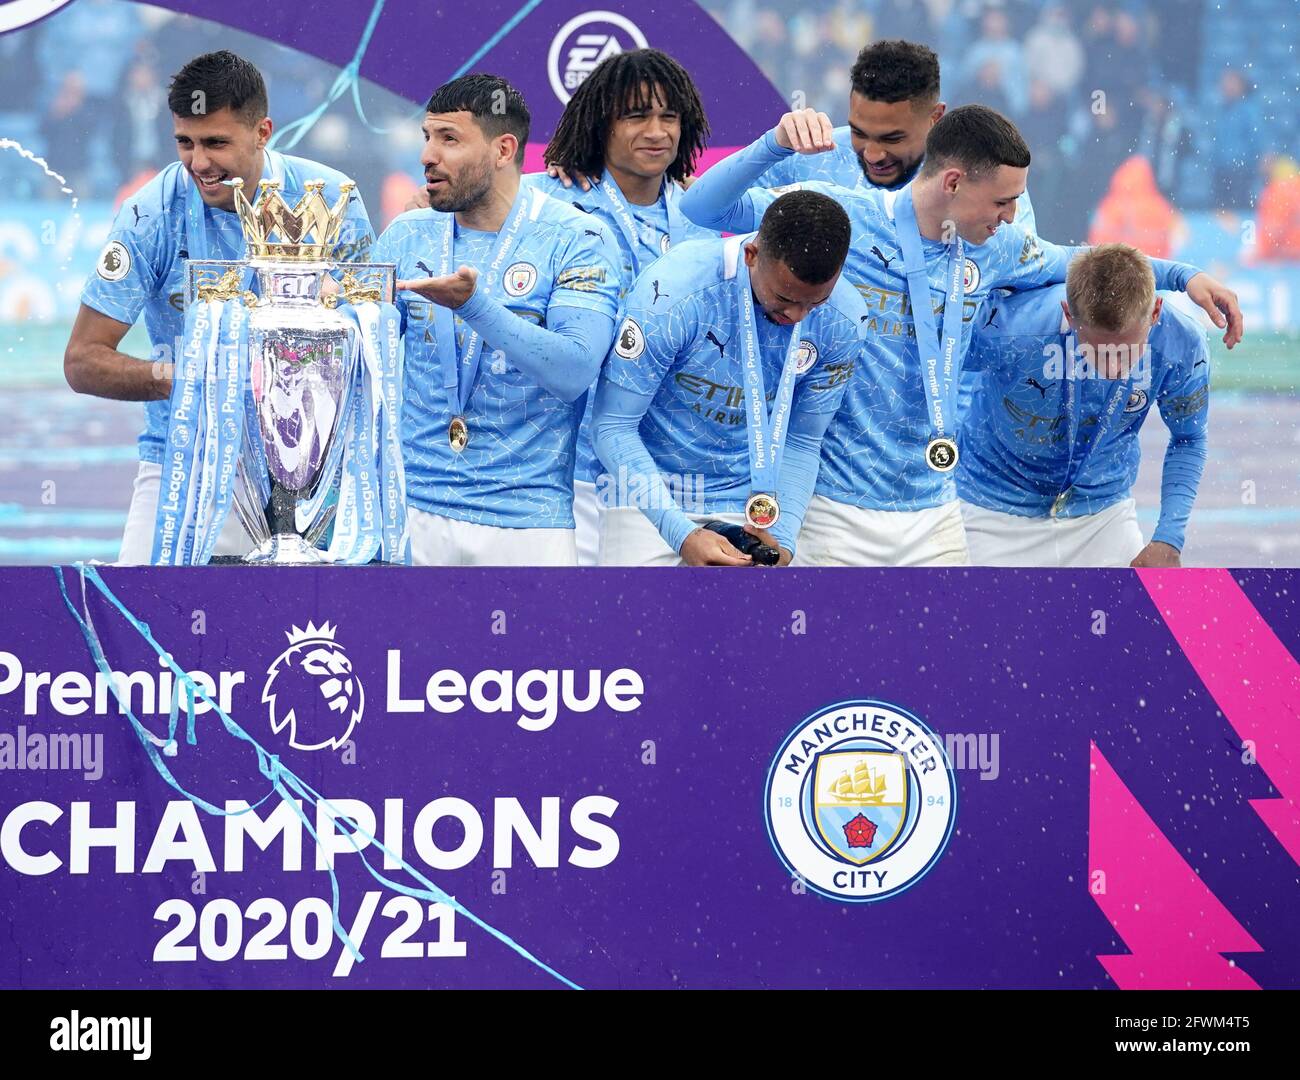 I giocatori di Manchester City festeggiano con il trofeo dopo il fischio finale nella partita della Premier League all'Etihad Stadium di Manchester. Data immagine: Domenica 23 maggio 2021. Foto Stock